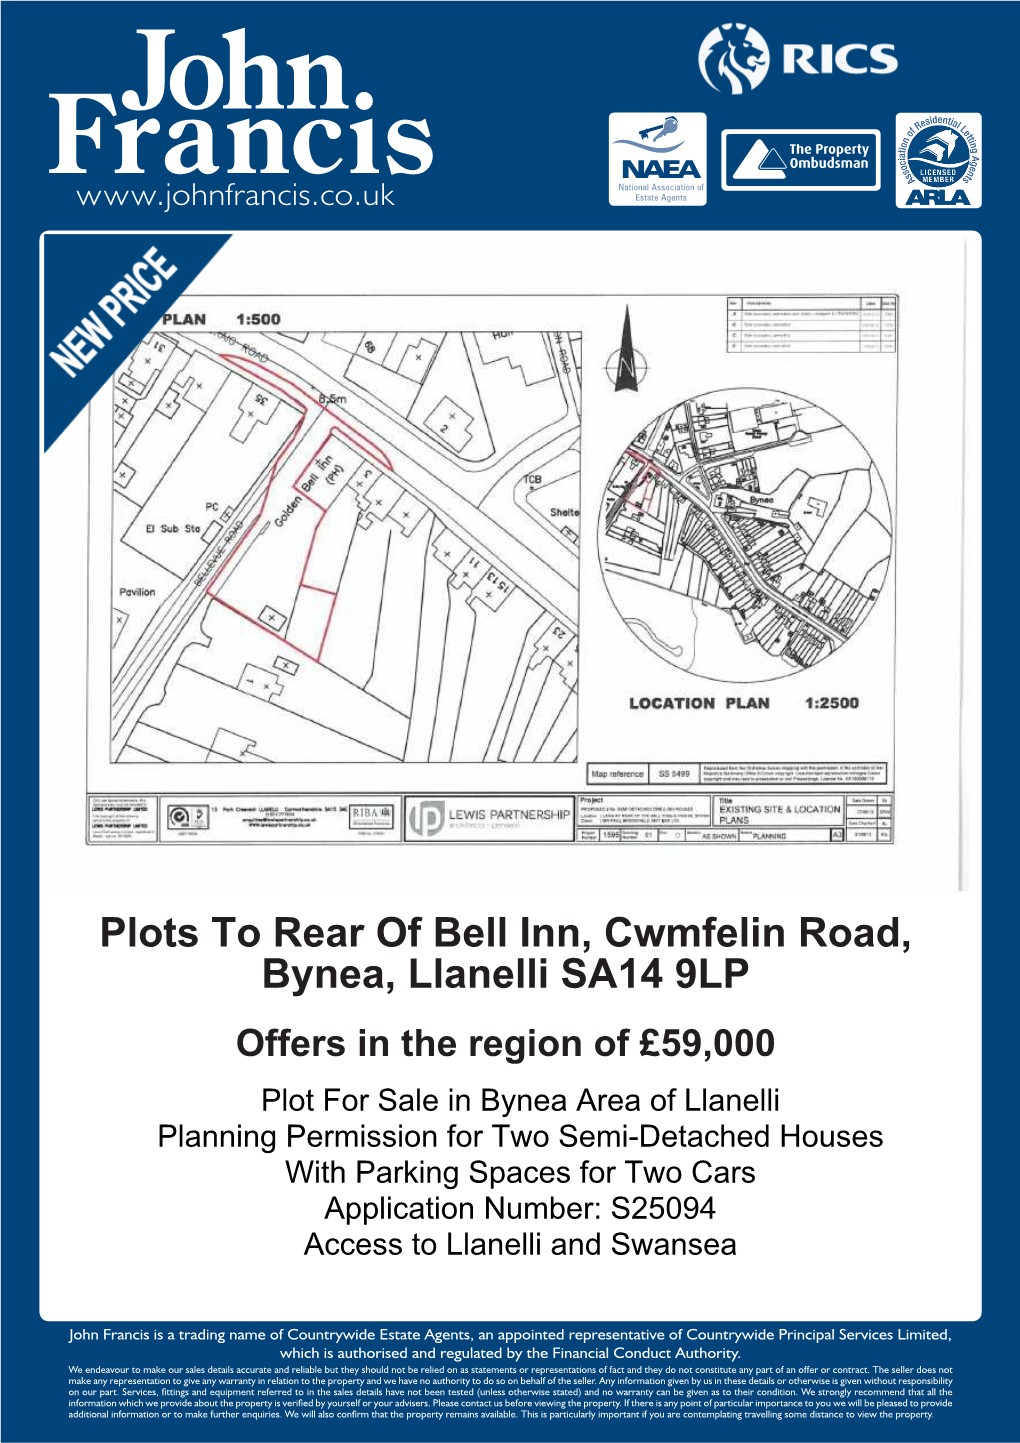 Plots to Rear of Bell Inn, Cwmfelin Road, Bynea, Llanelli SA14